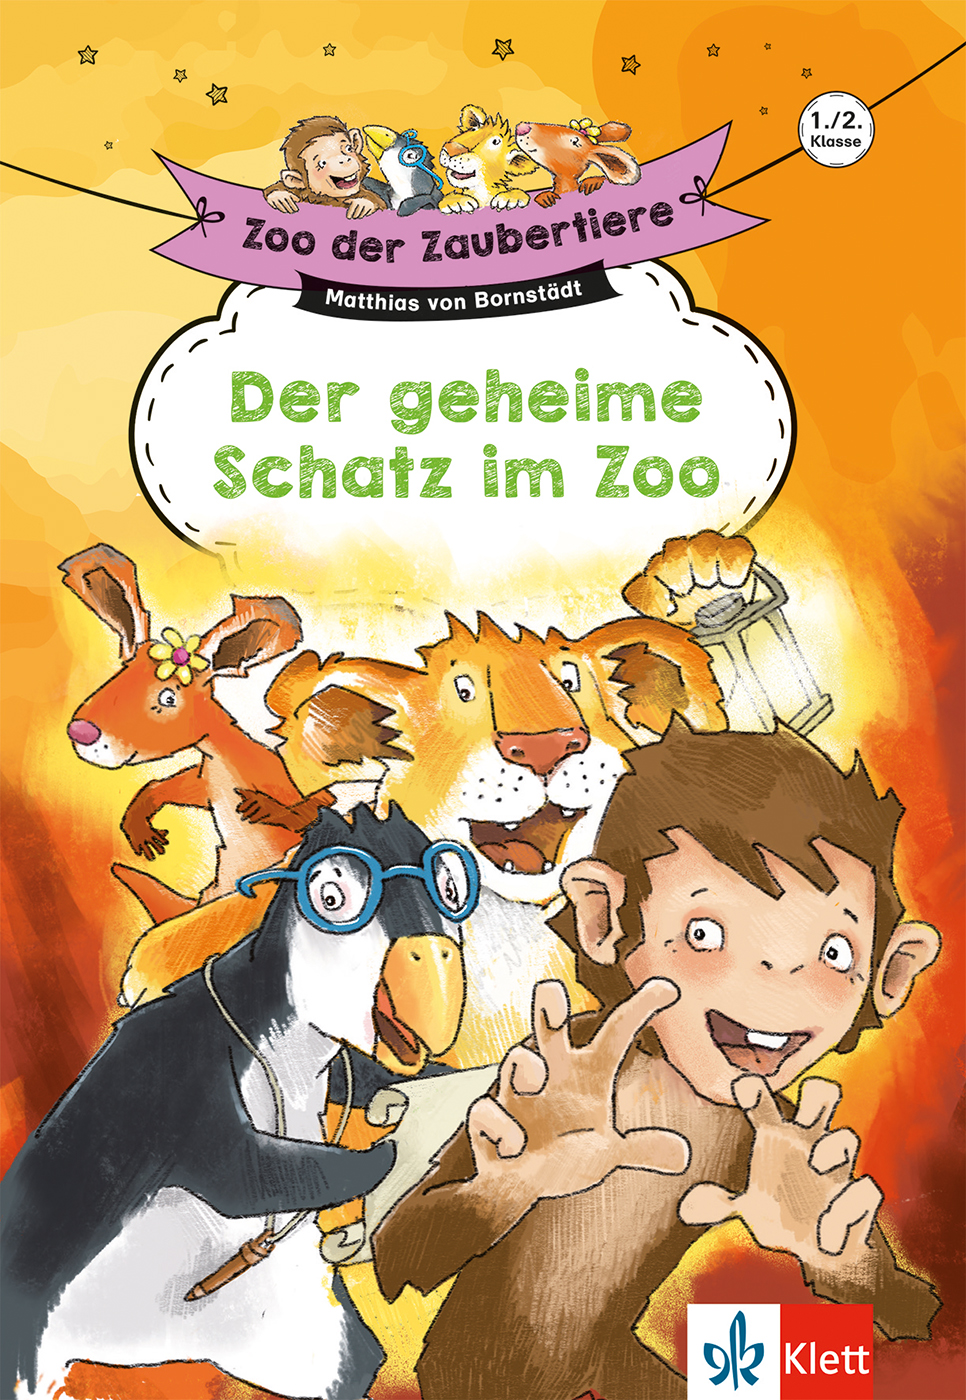 Klett Zoo der Zaubertiere: Der geheime Schatz im Zoo, 1./2. Klasse